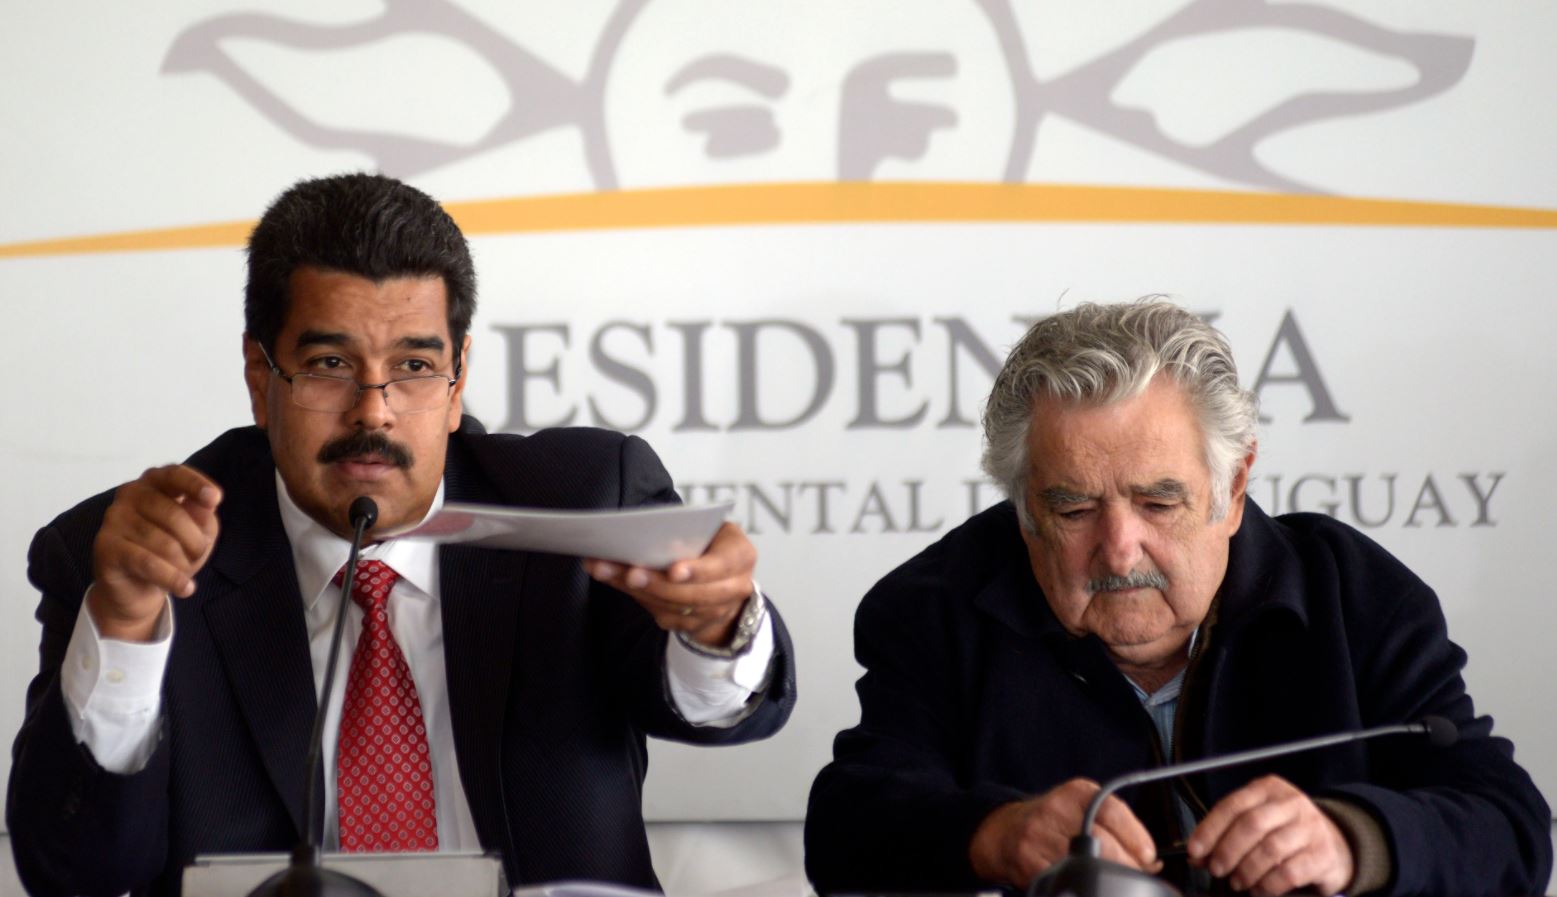 Presionan a gobierno uruguayo por millonaria deuda del chavismo